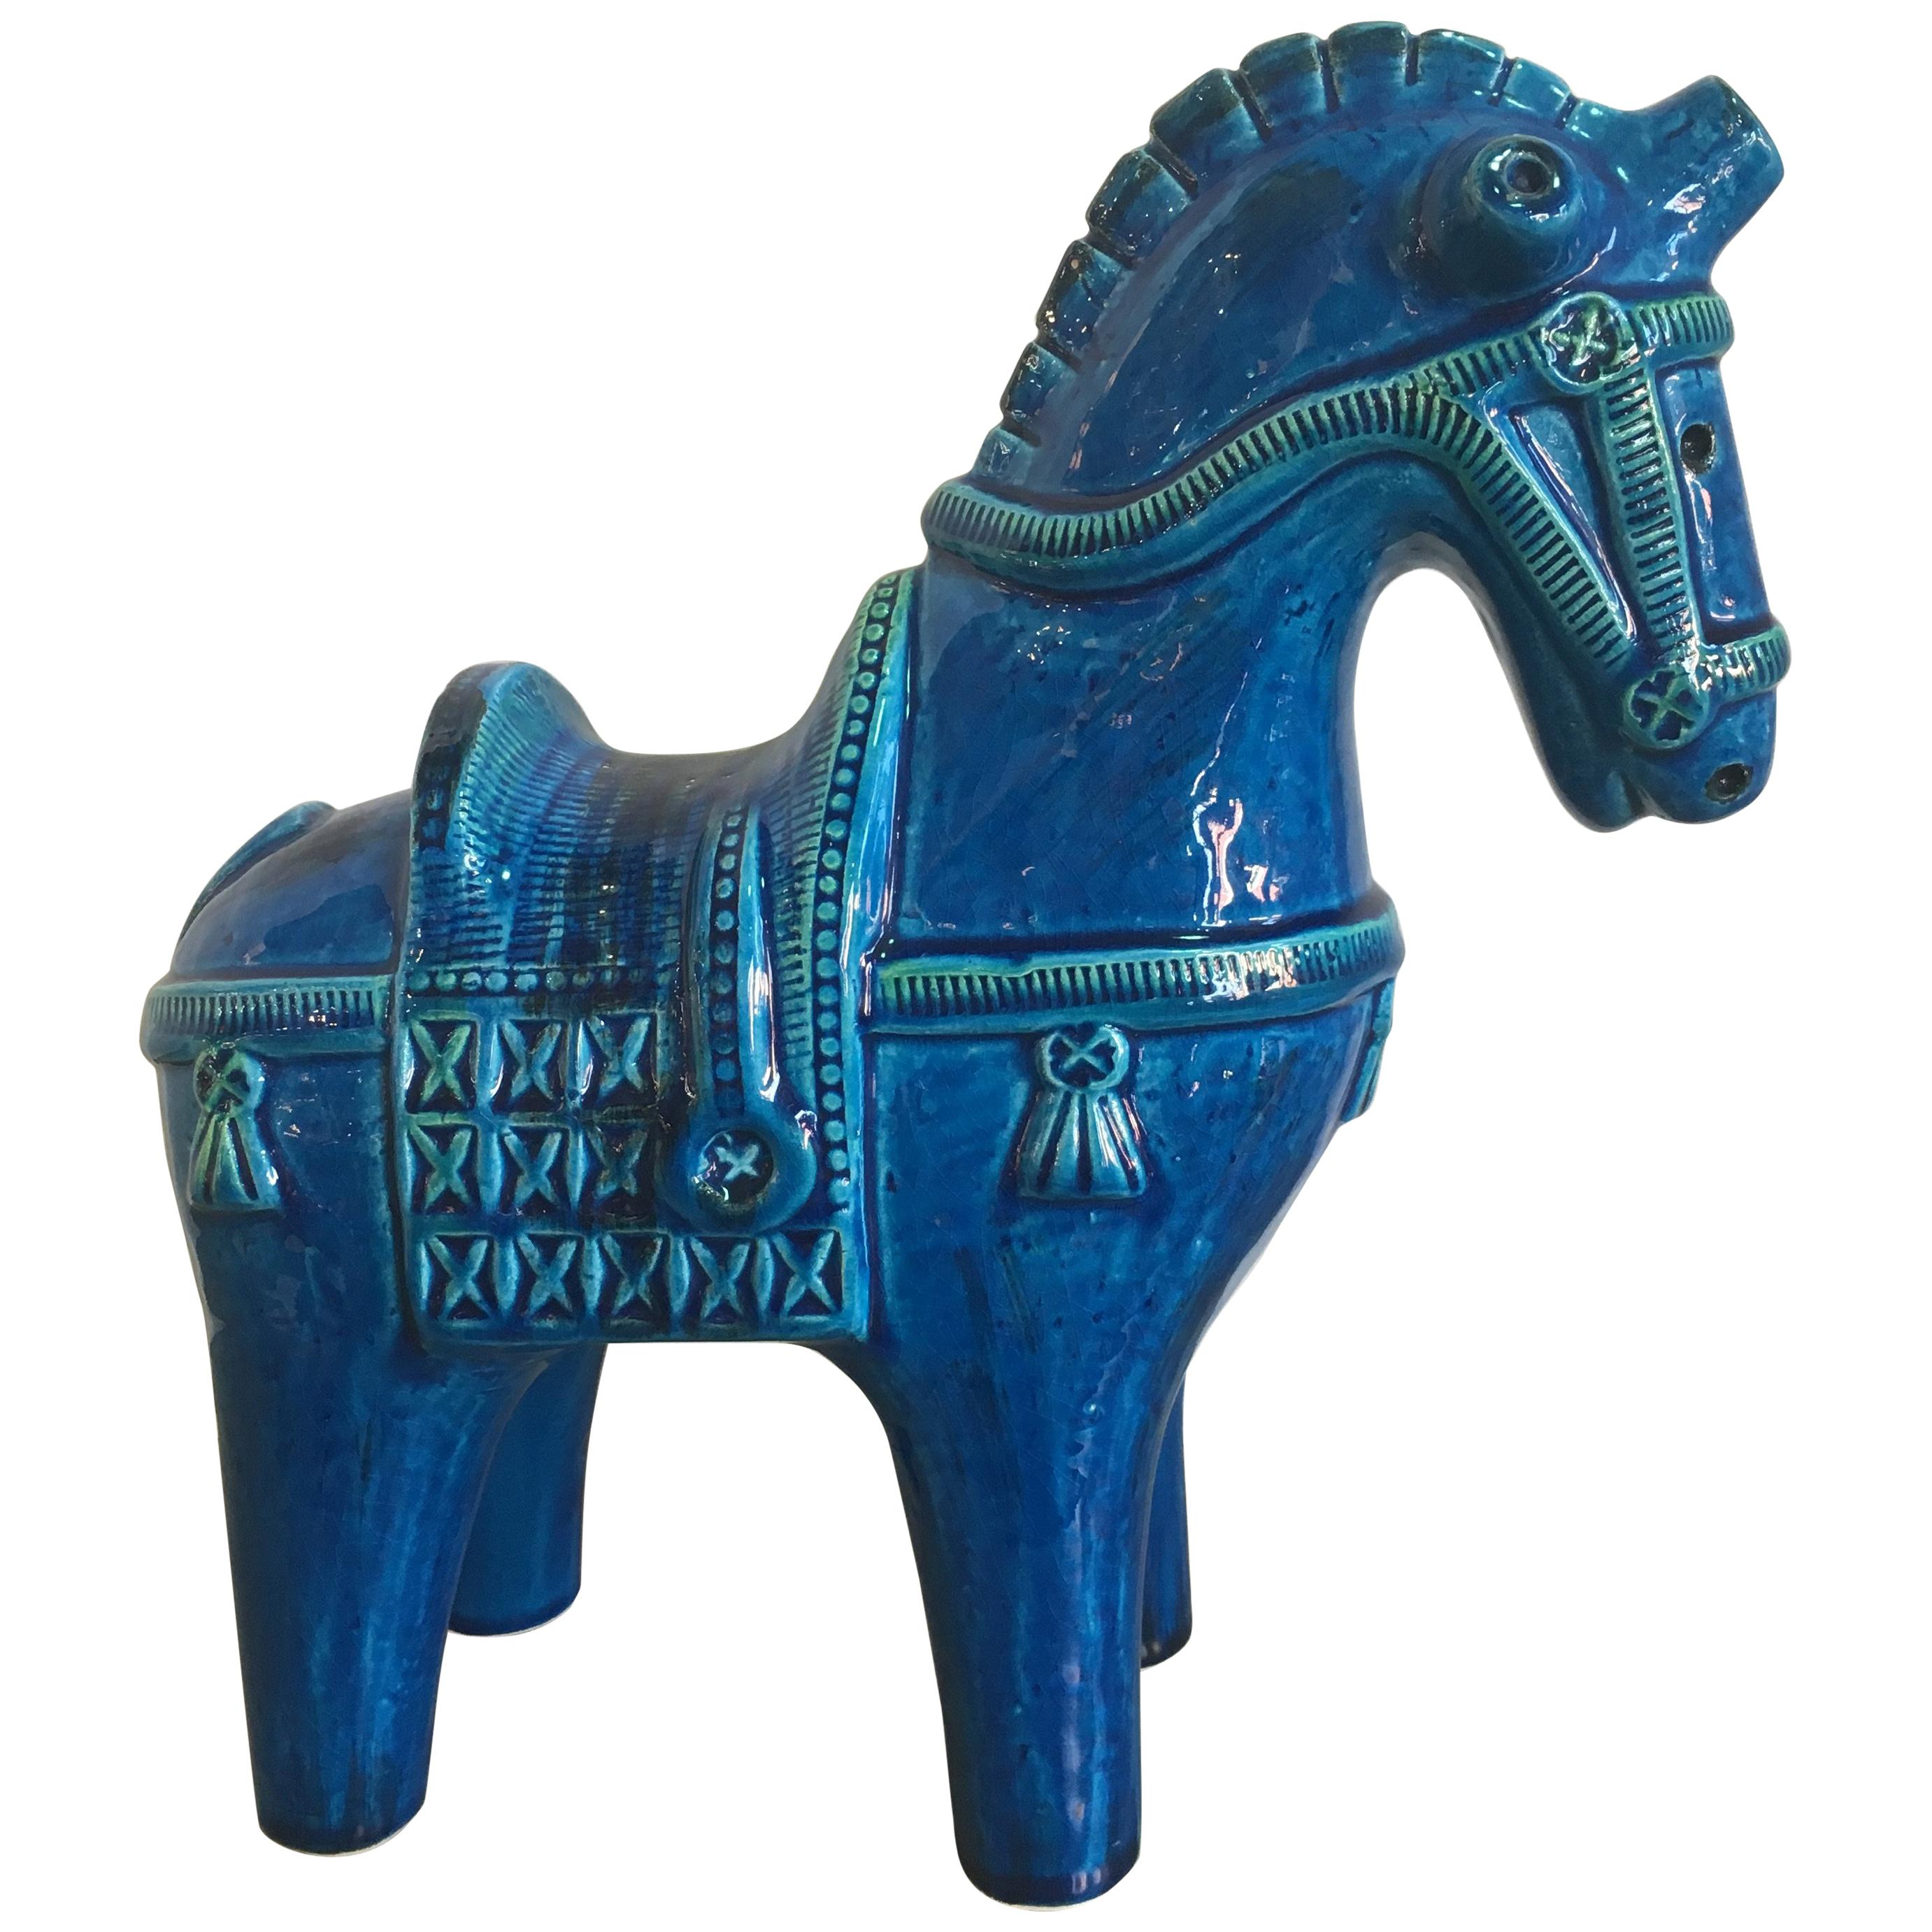 "Rimini Blu" Ceramic Horse by Aldo Londi for Bitossi/Flavia